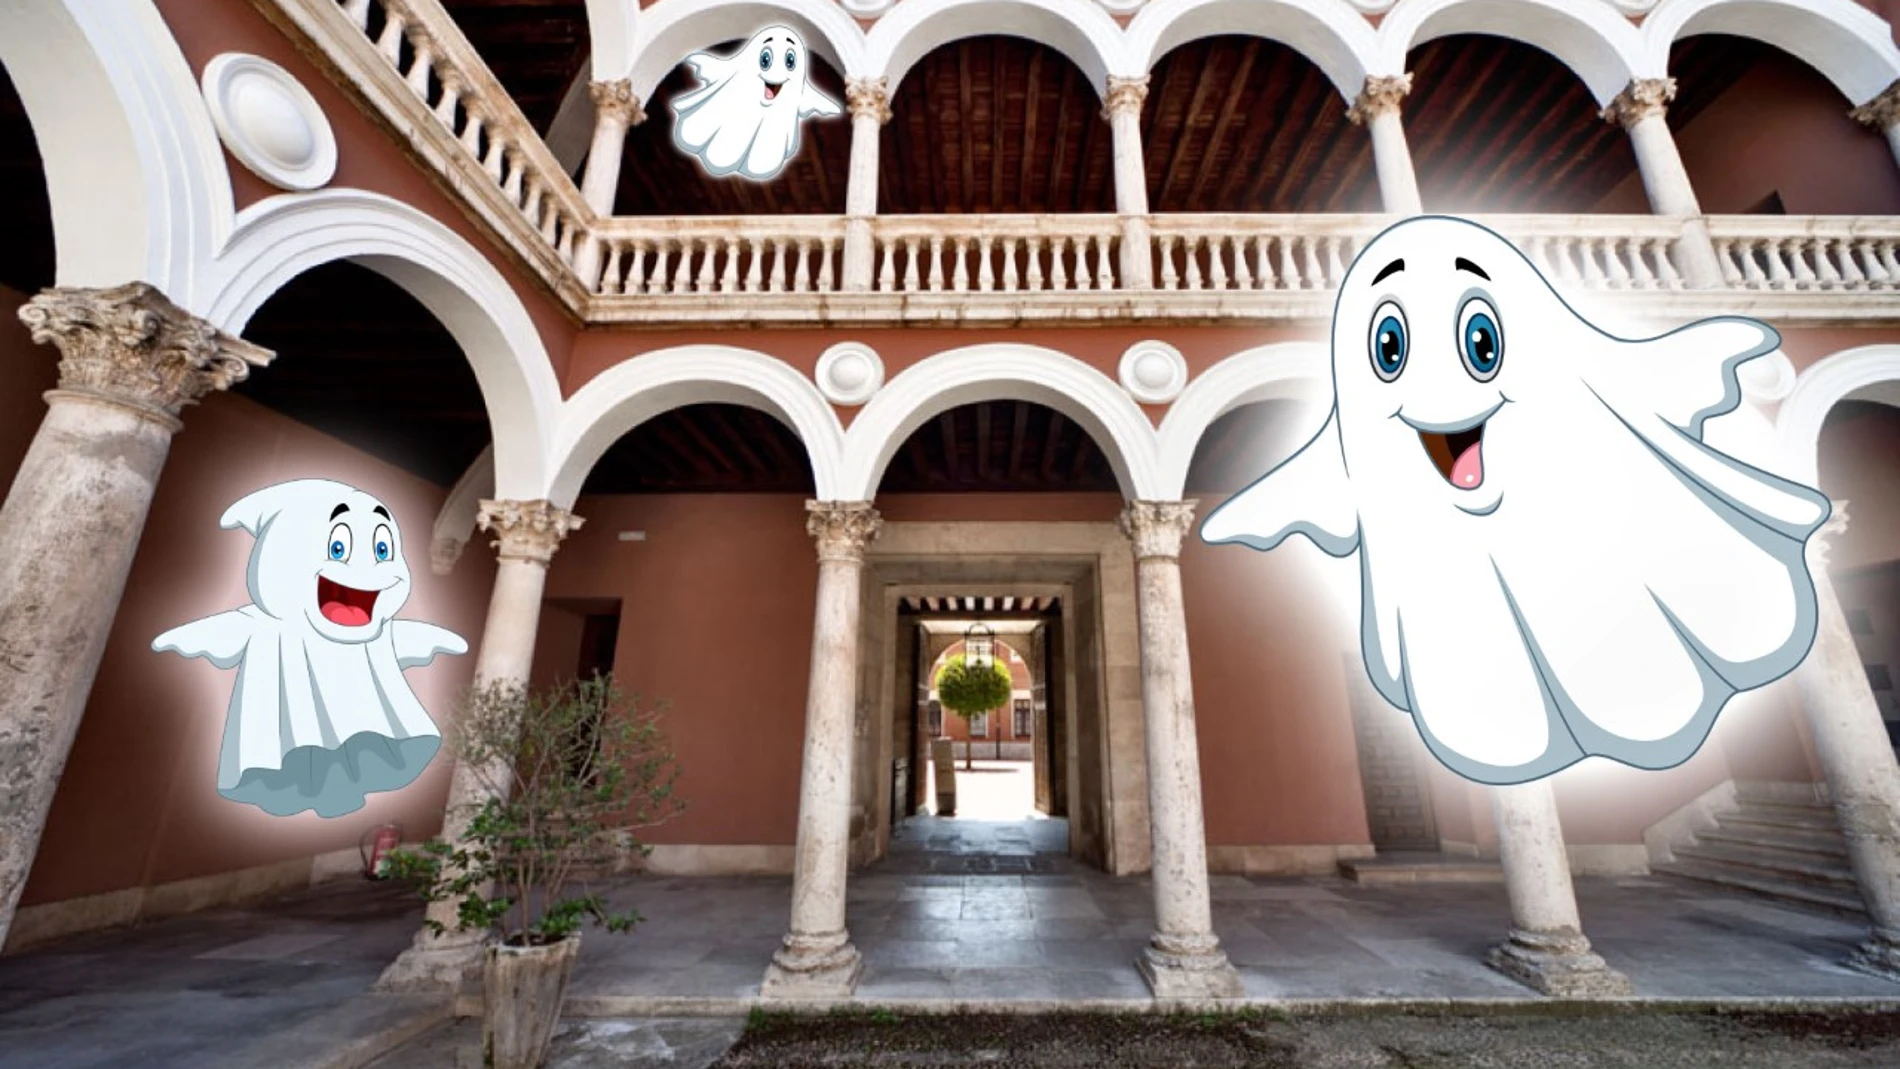  Nueva visita turística de Valladolid "Los fantasmas de Fabio Nelli"